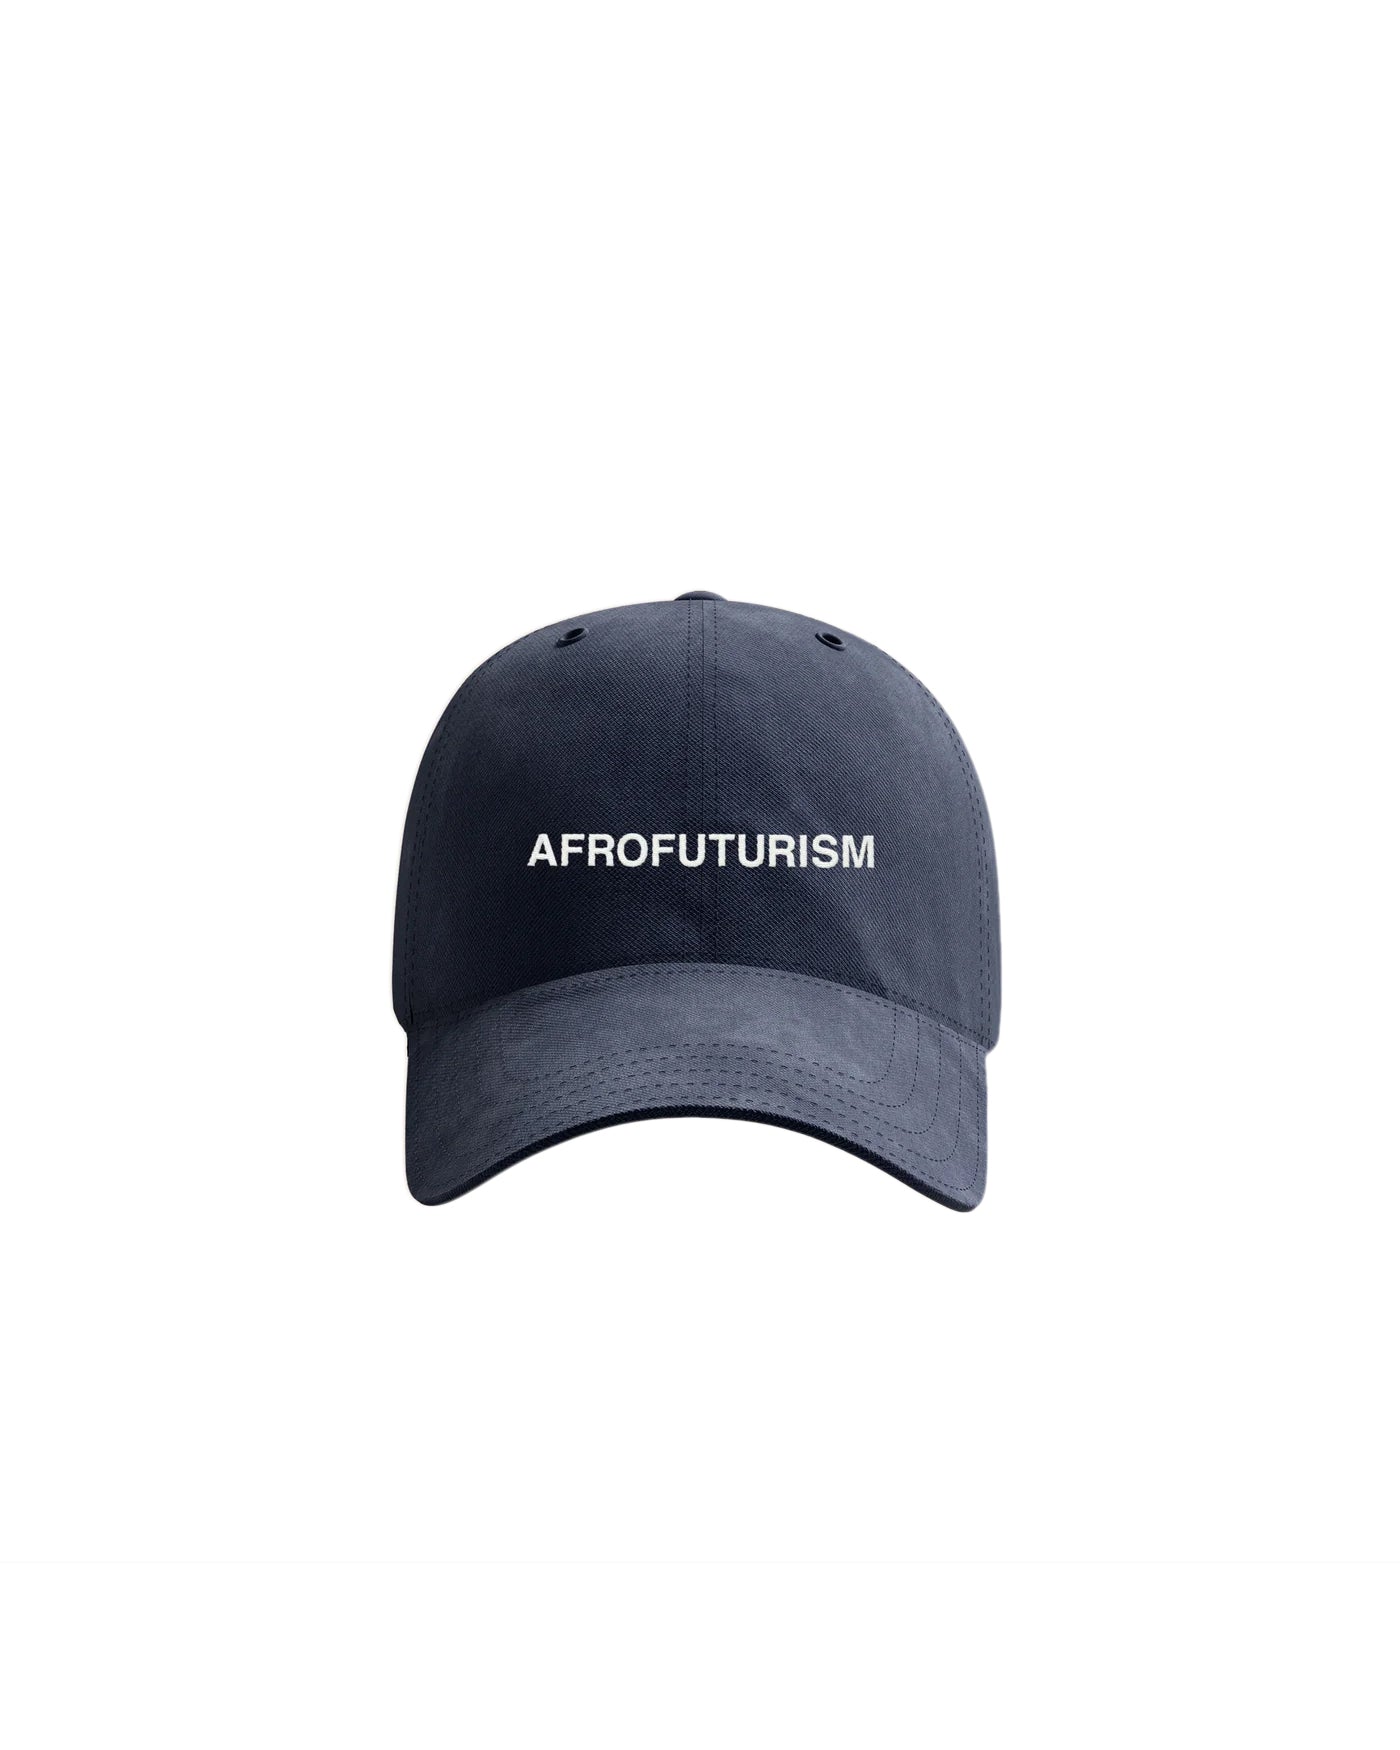 アフロフューチャリズムのお父さんの帽子